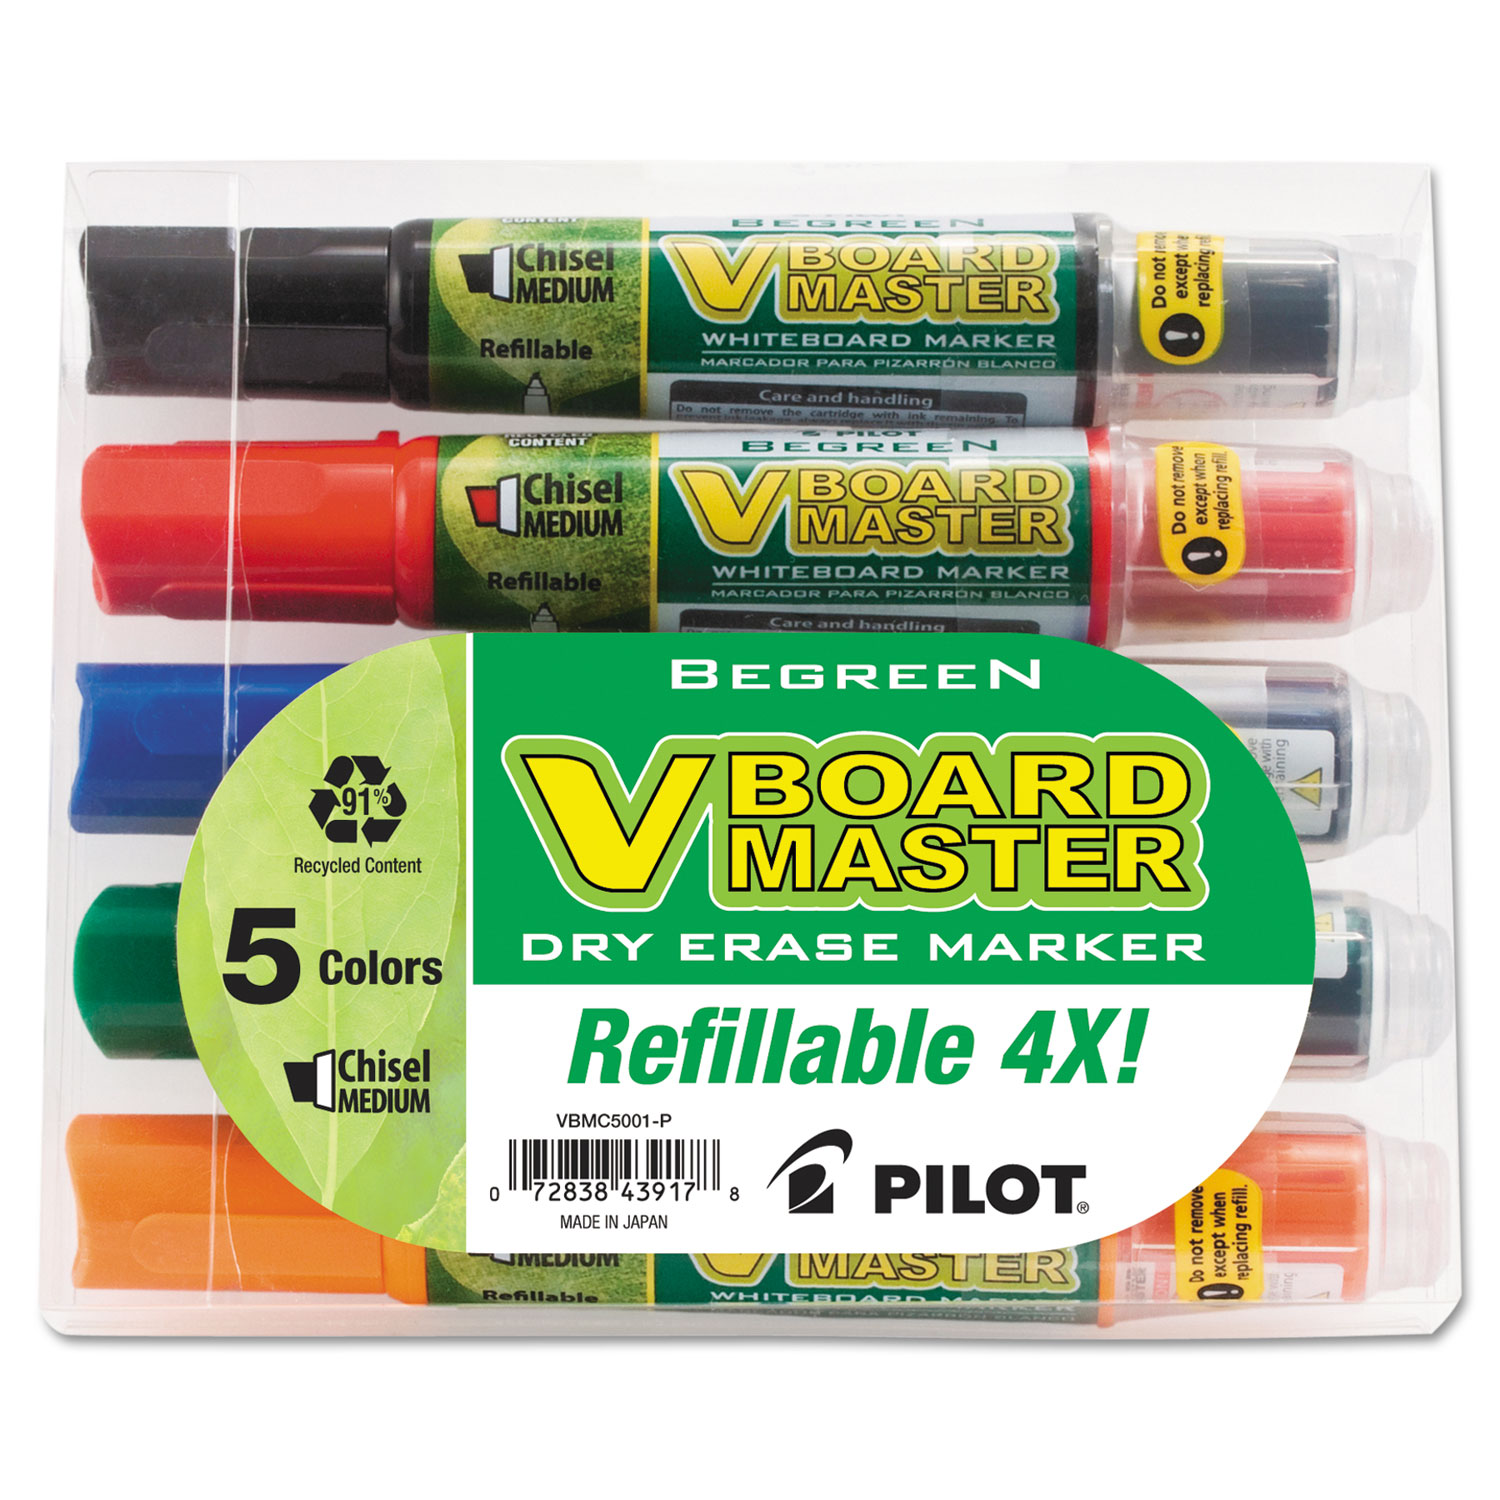  Pilot 43917 BeGreen V Board Master Dry Erase Marker, Medium Chisel Tip, Assorted Colors, 5/Pack (PIL43917) 